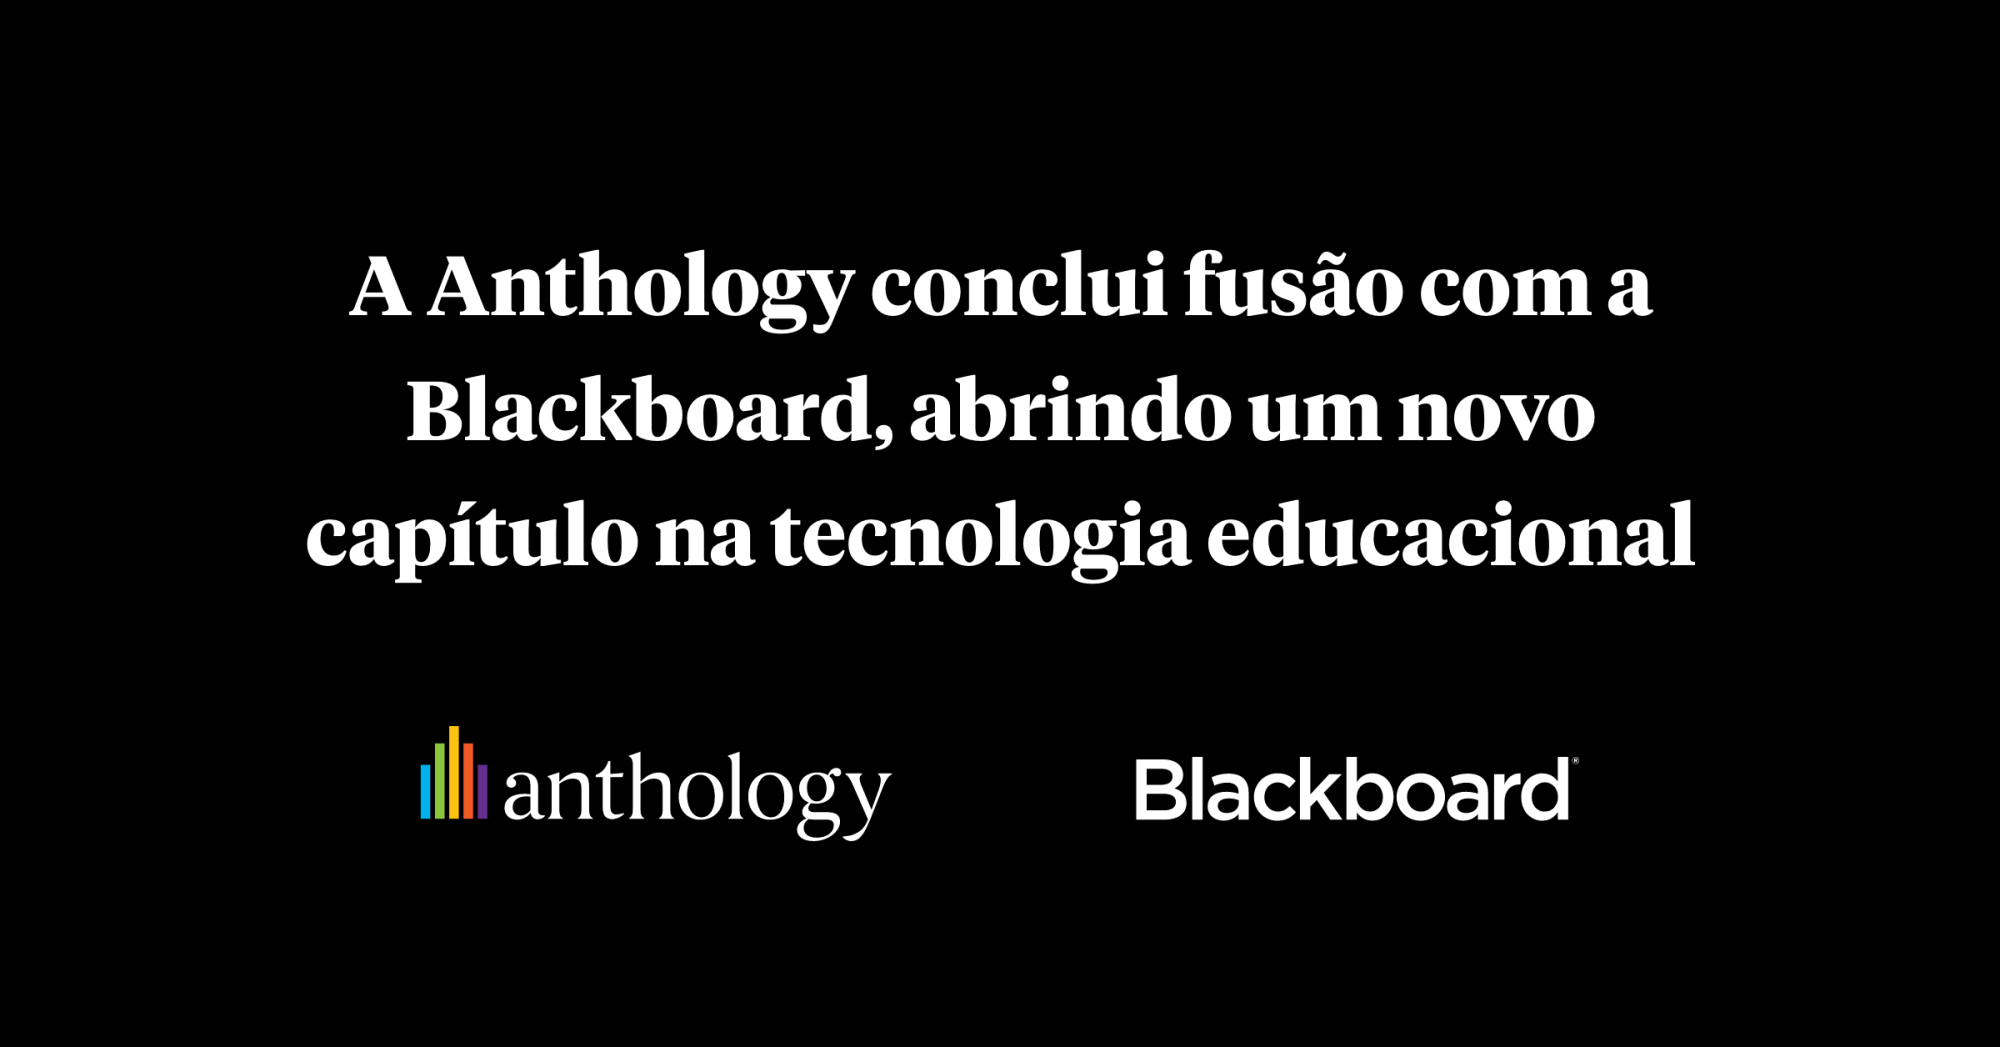 A Anthology conclui fusão com a Blackboard, abrindo um novo capítulo na tecnologia educacional